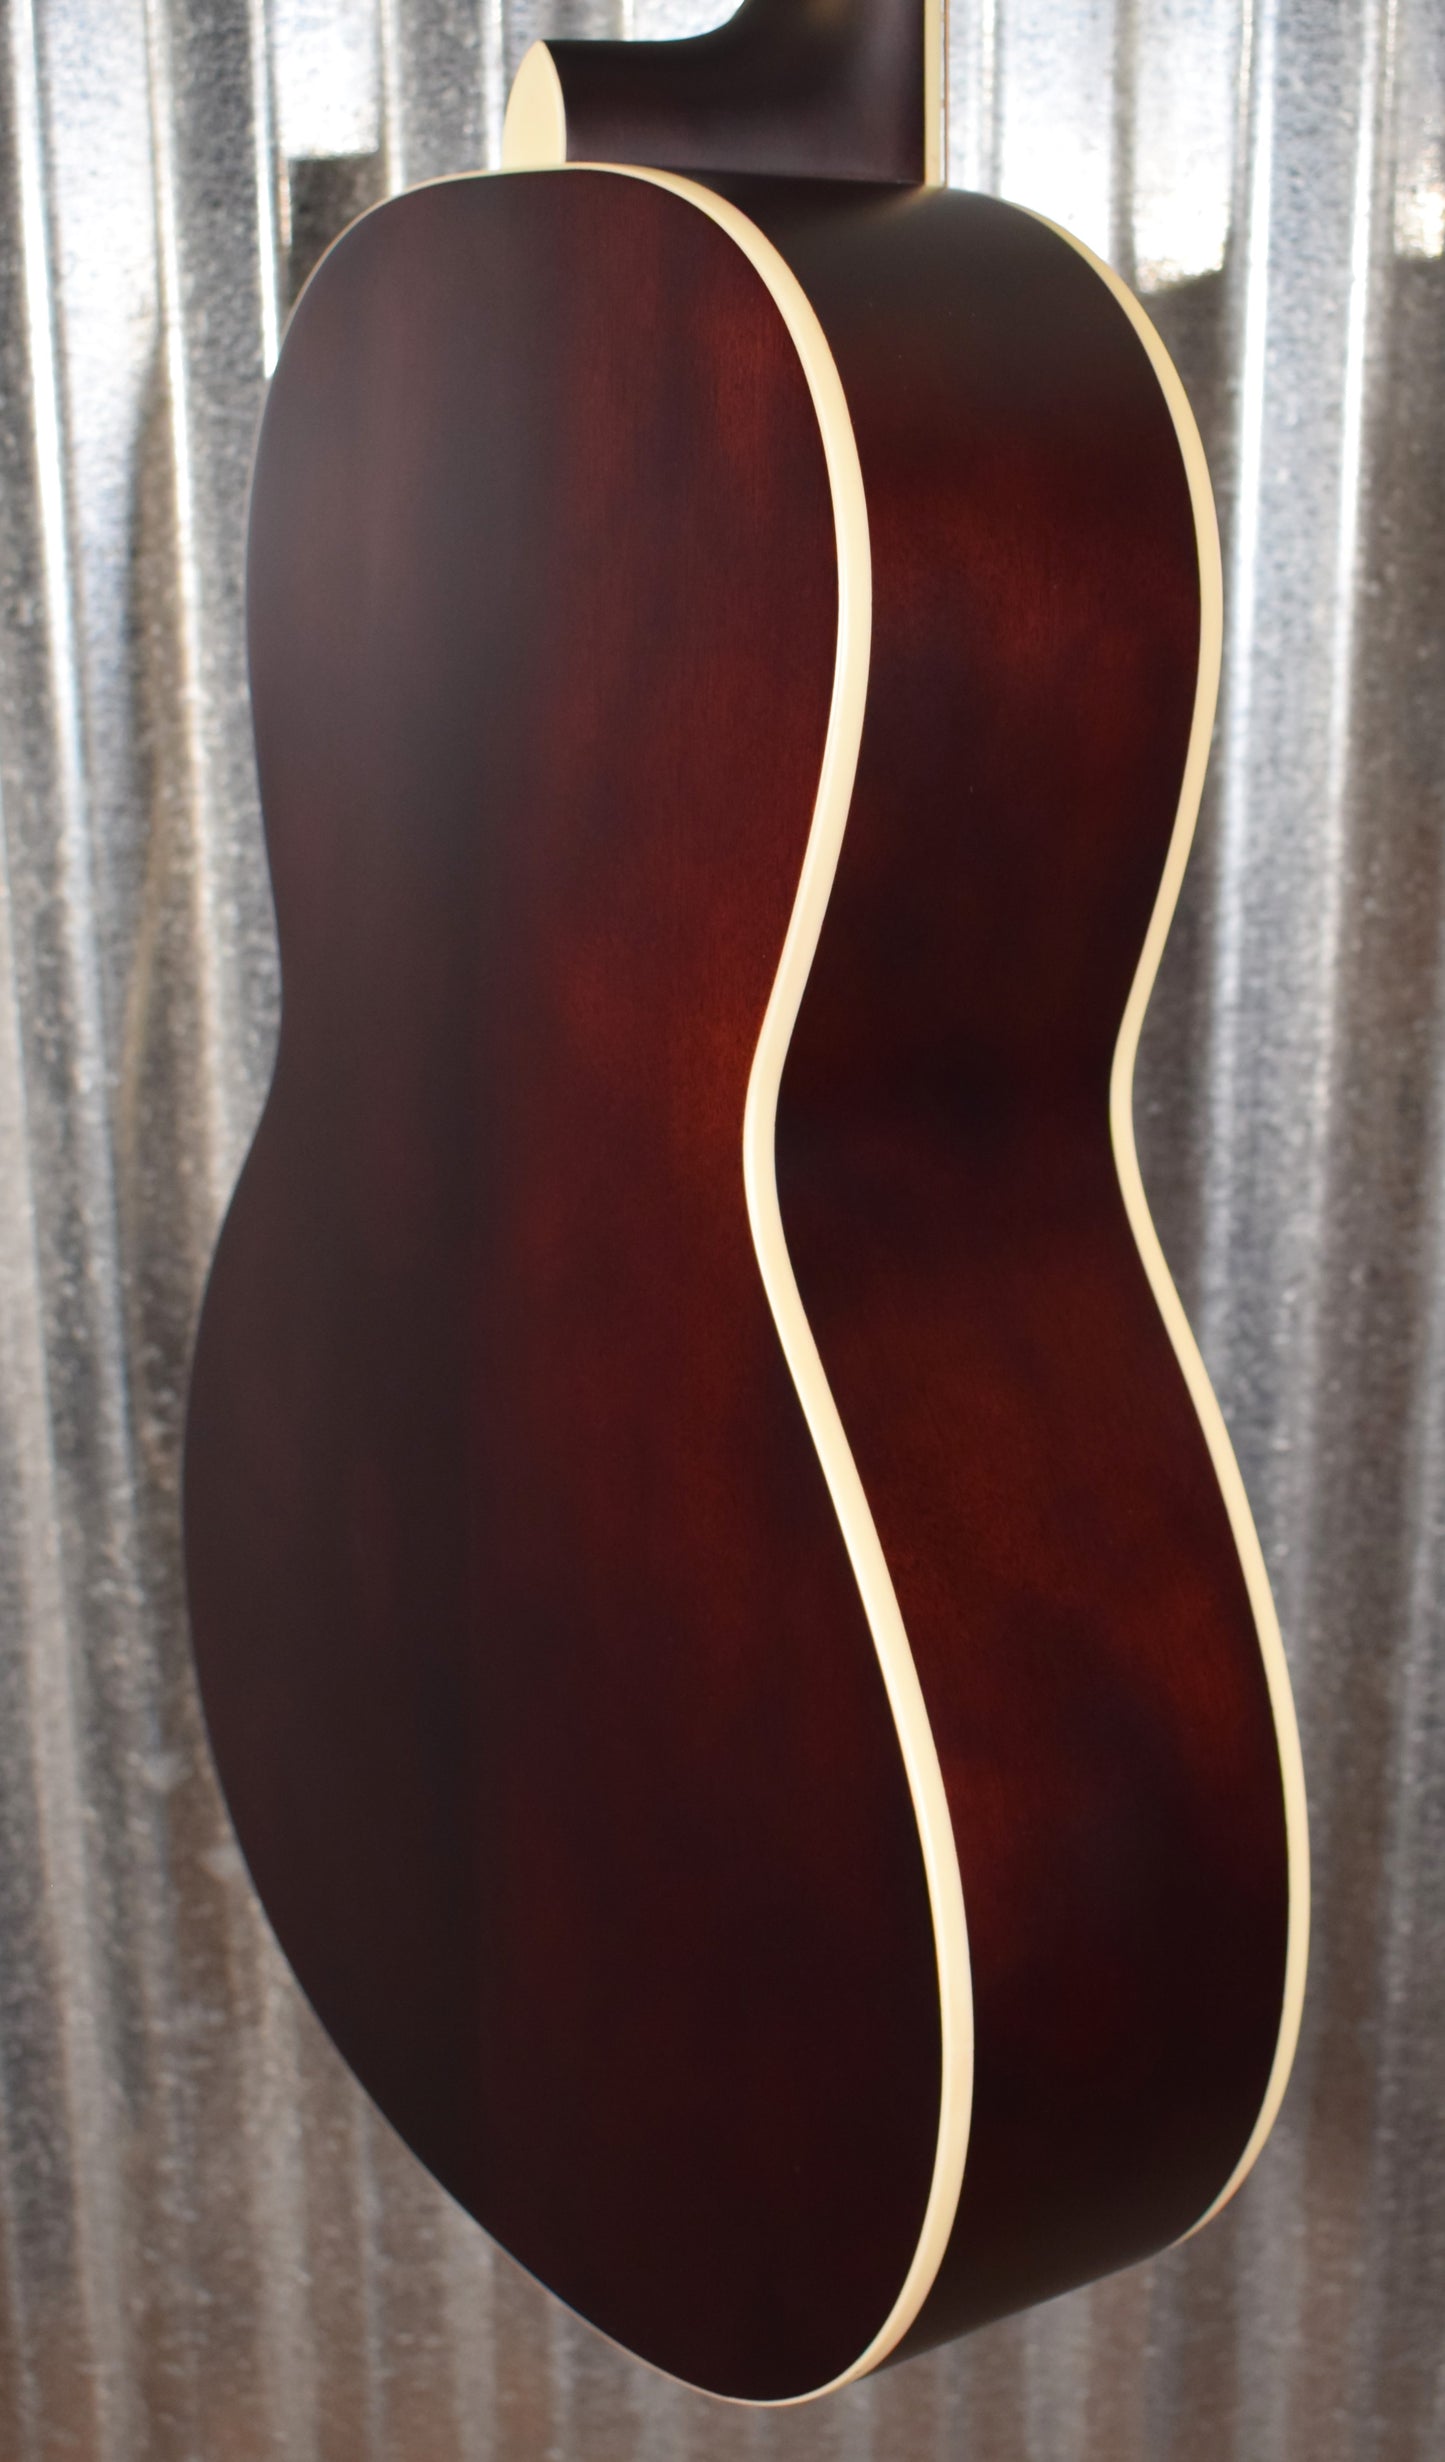 PRS Paul Reed Smith SE Parlor Tobacco Sunburst Acoustic Electric Guitar & Bag Blem #8716